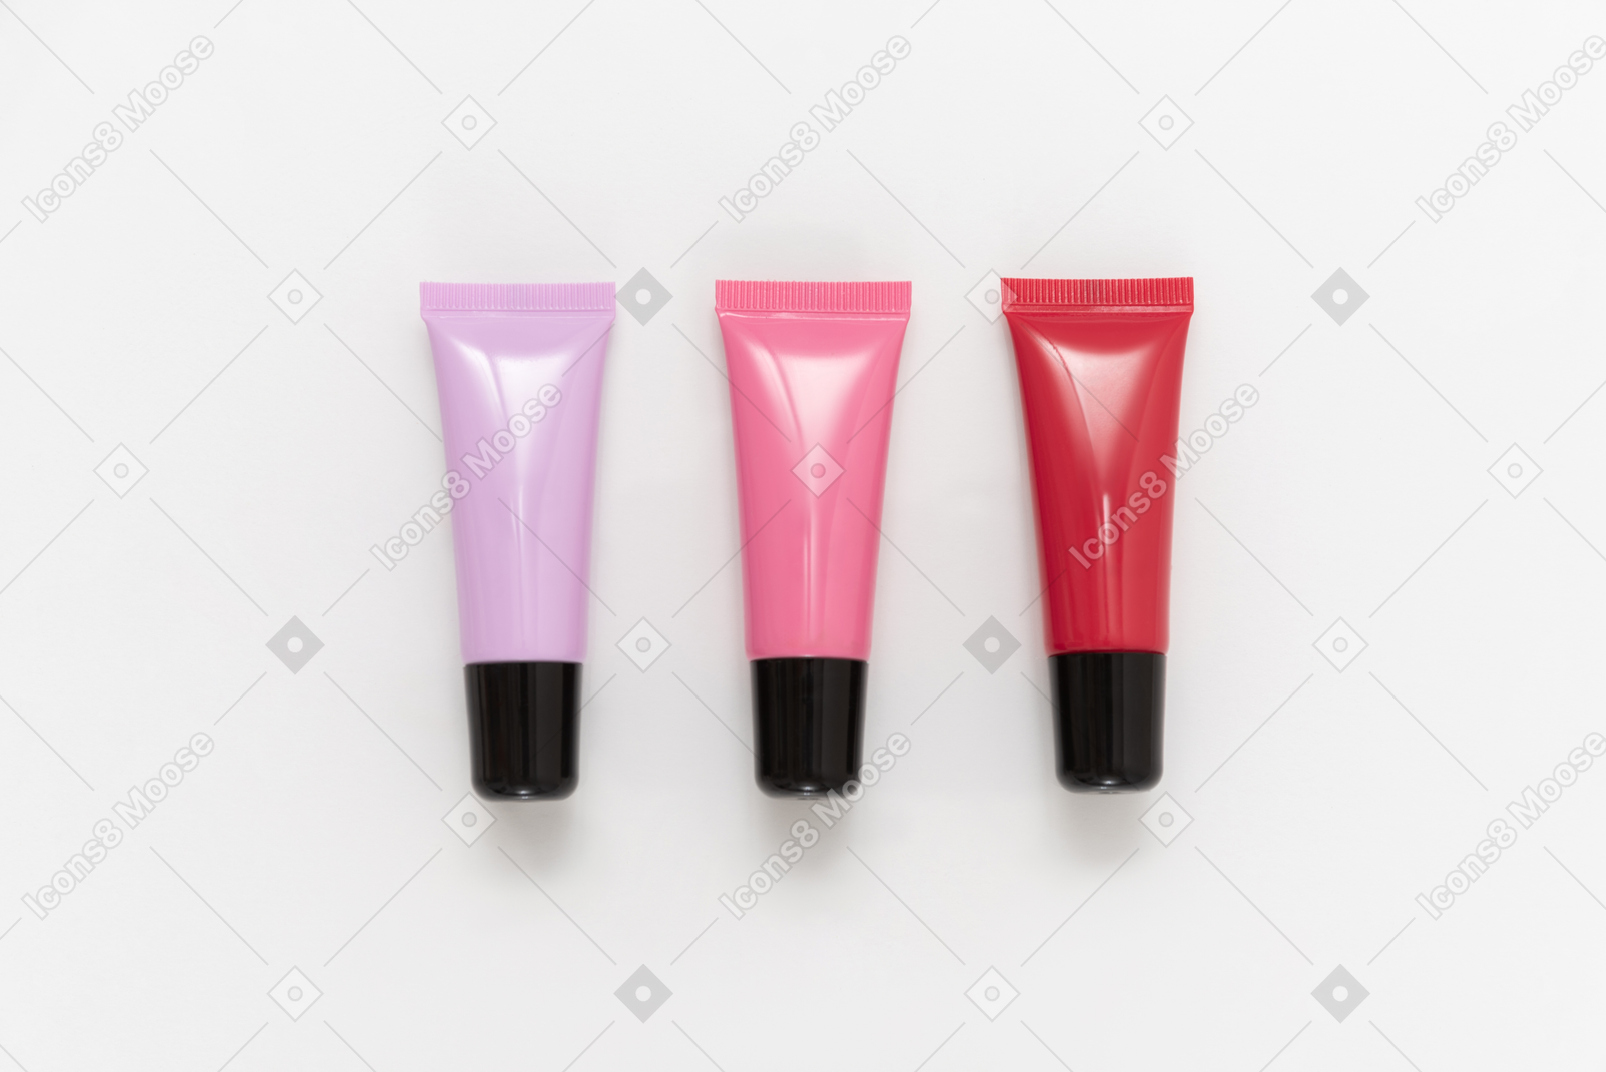 Contenants de rouge à lèvres rouge, violet et rose